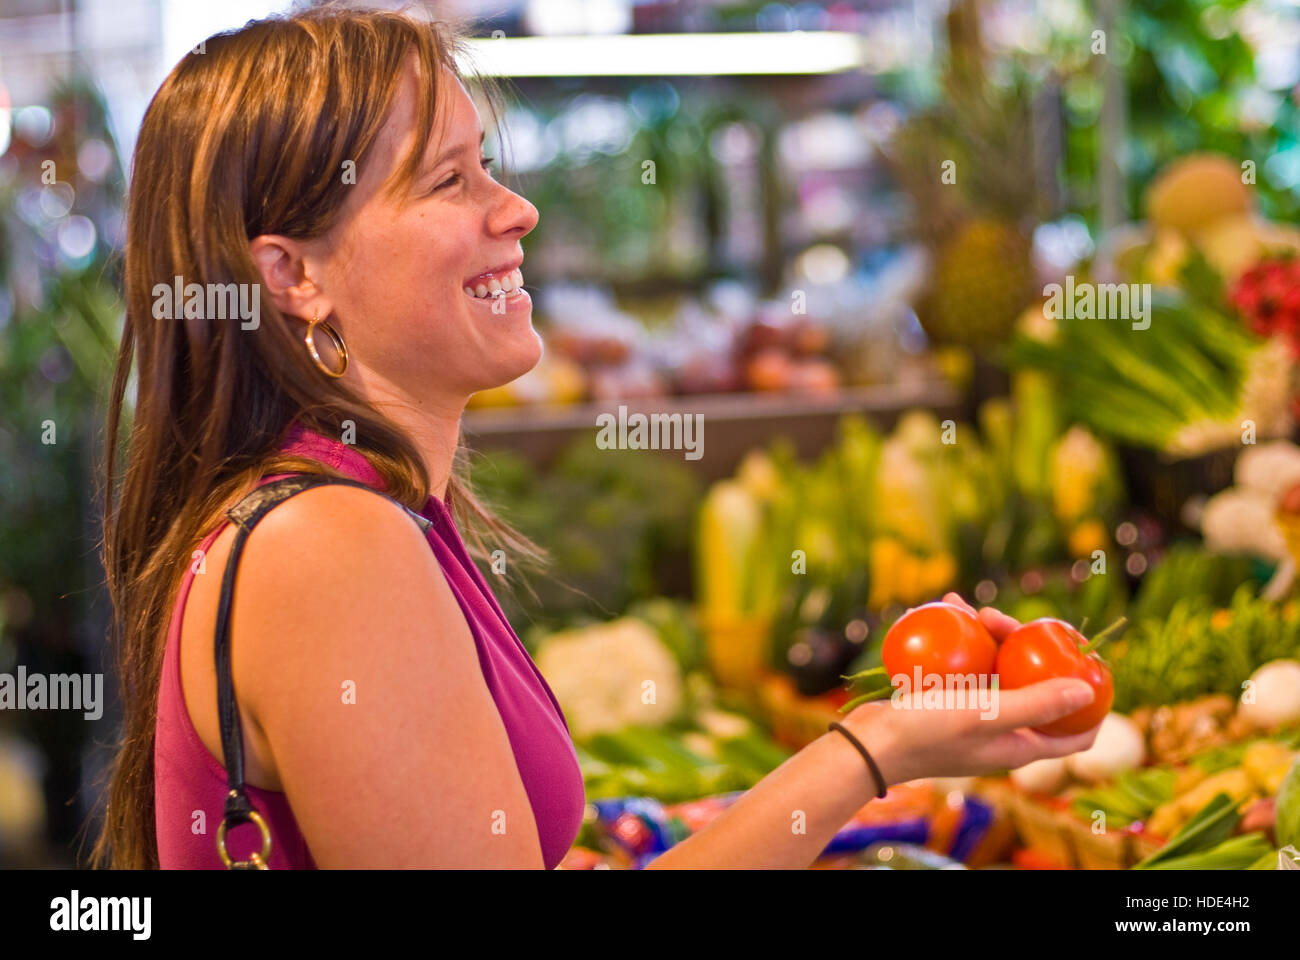 Mercato degli Agricoltori, Donna selezione di frutta fresca e verdura, STATI UNITI D'AMERICA Foto Stock